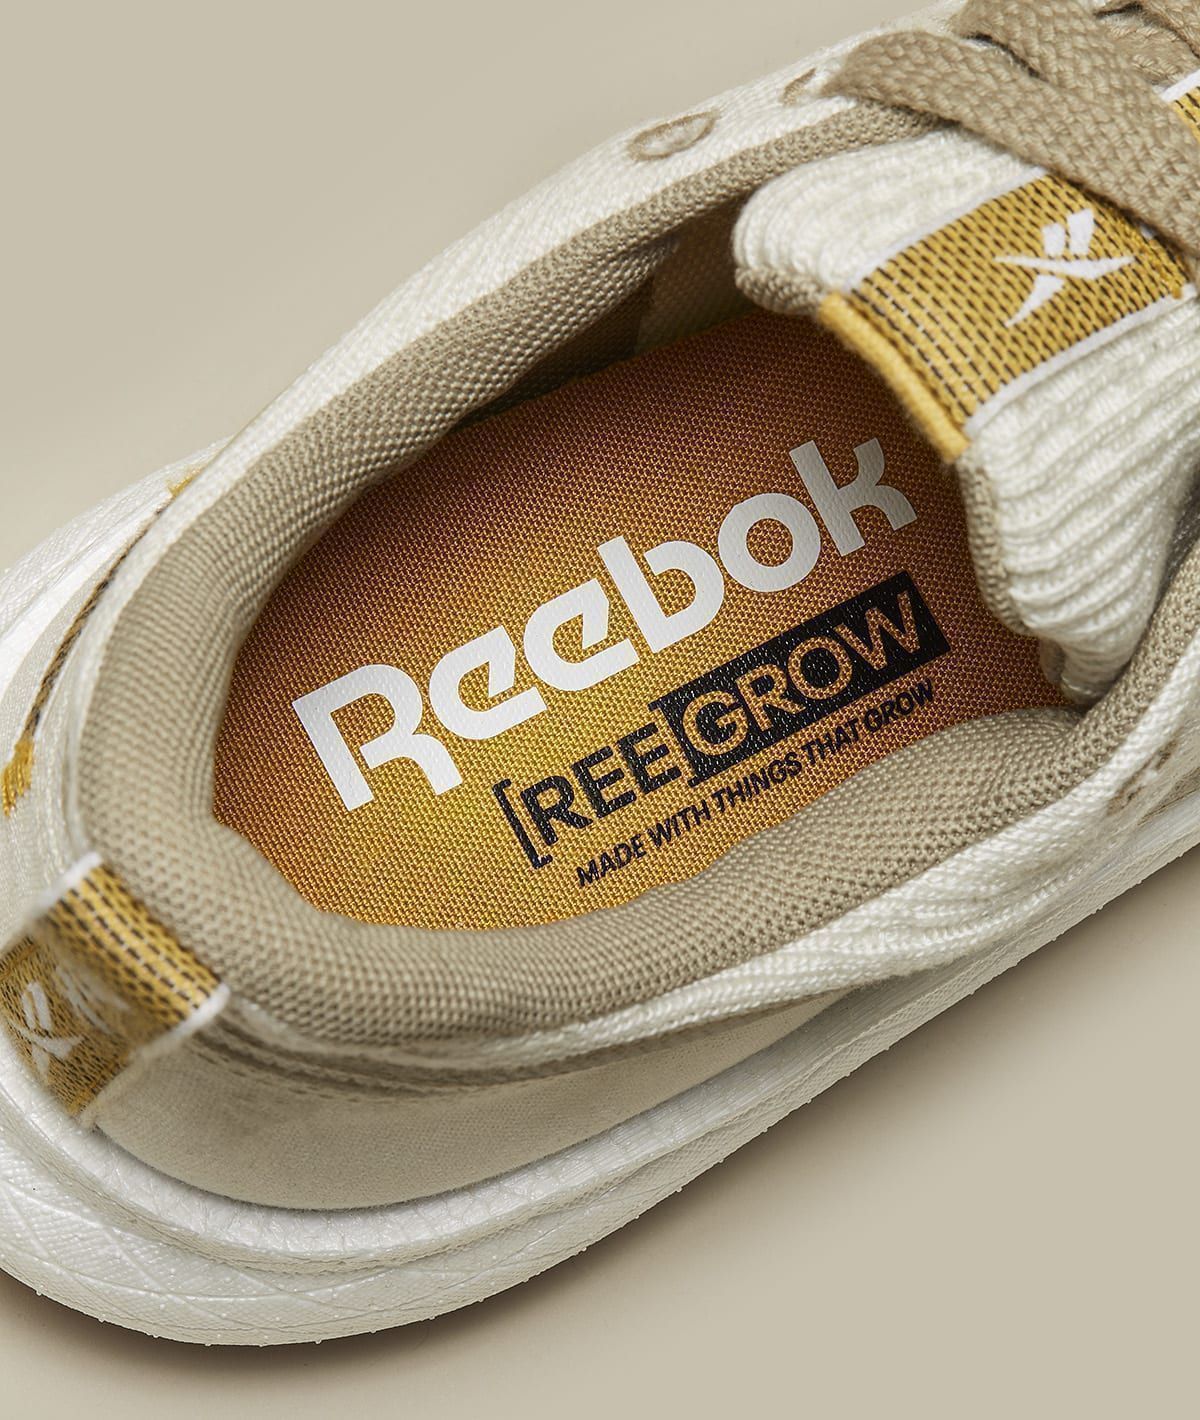 Американская Authentic Brands Group завершила сделку по приобретению Reebok